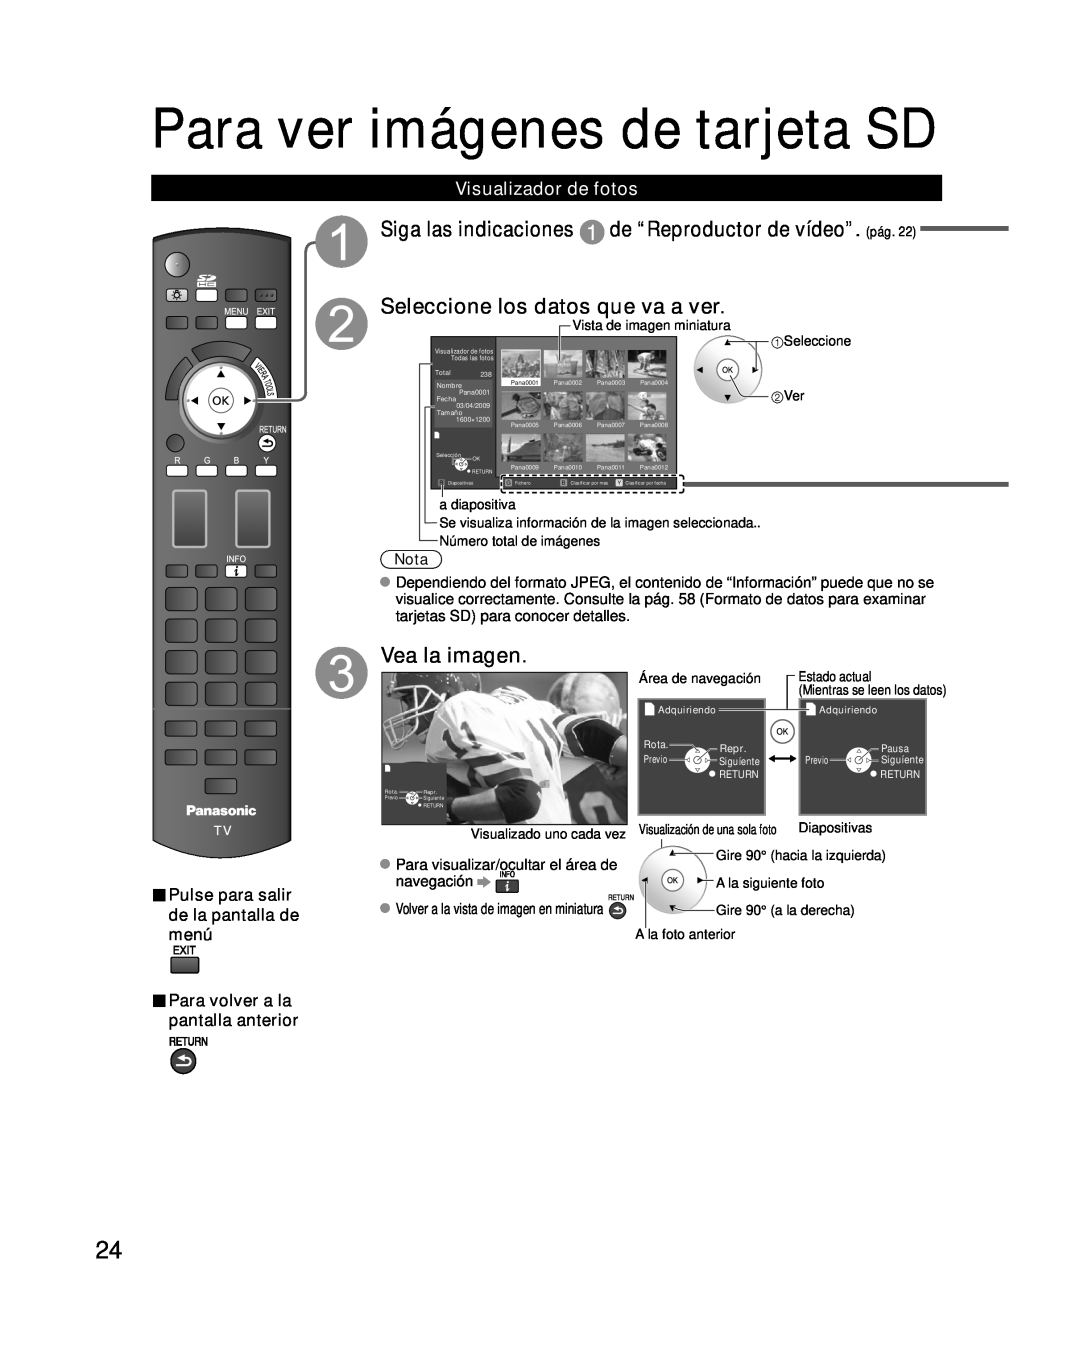 Panasonic TC-P54G10, TC-P50G10 Siga las indicaciones de “Reproductor de vídeo”. pág, Visualizador de fotos, Vea la imagen 